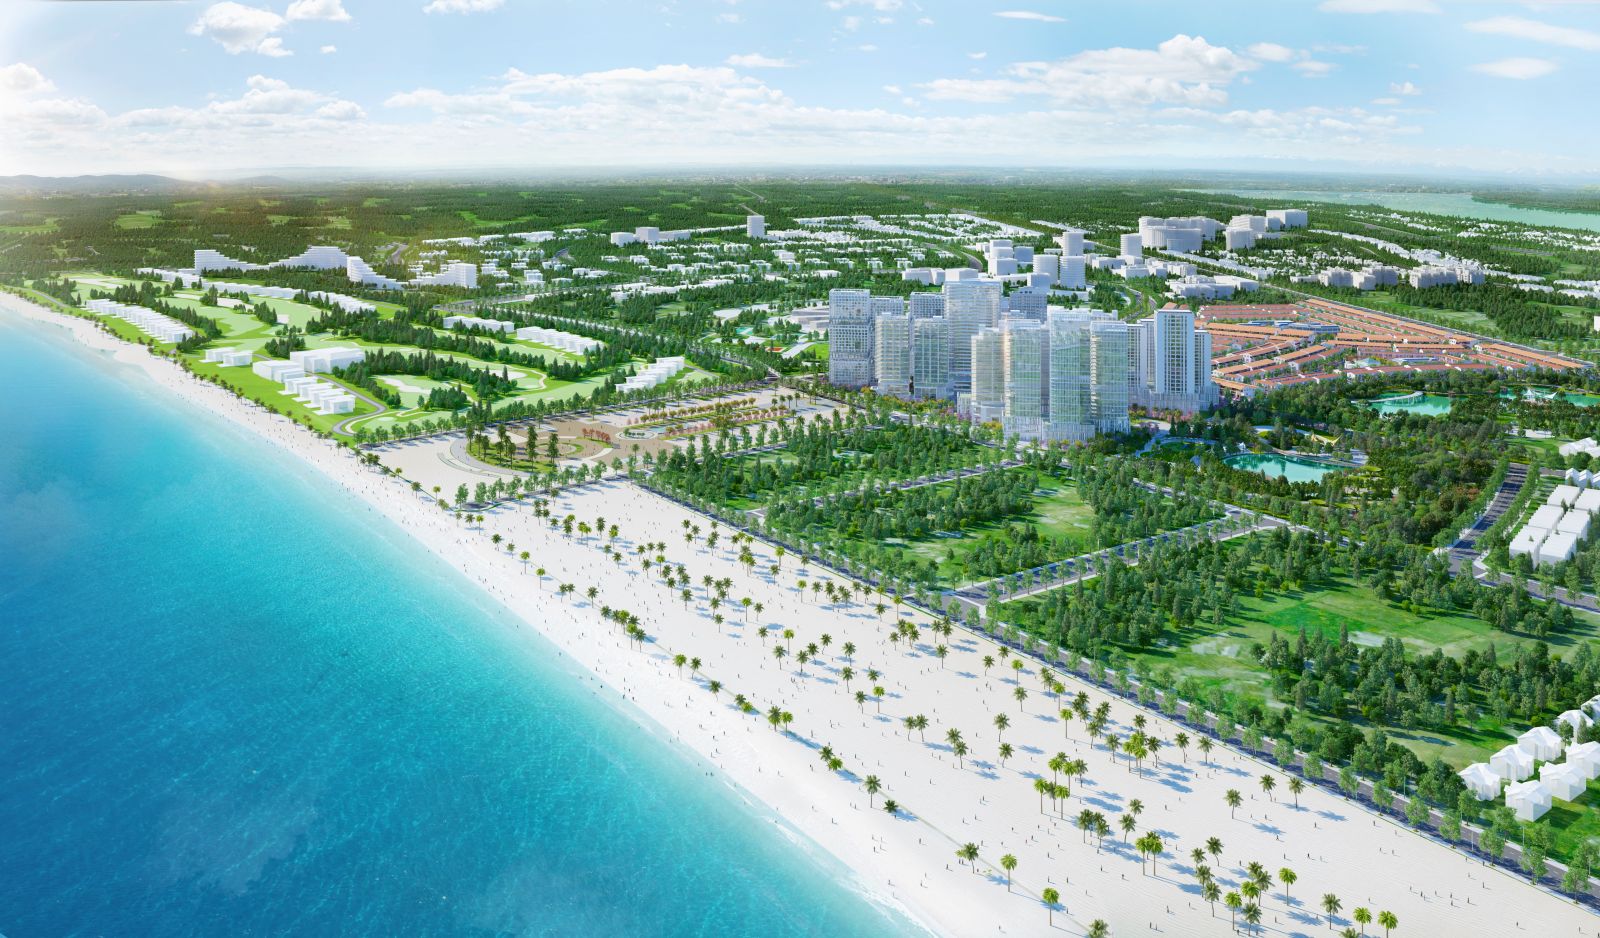 phoi canh nhon hoi new city 2 - Đại lộ “vàng” 19B kết nối sân bay - xung lực phát triển cực nhanh năm 2020